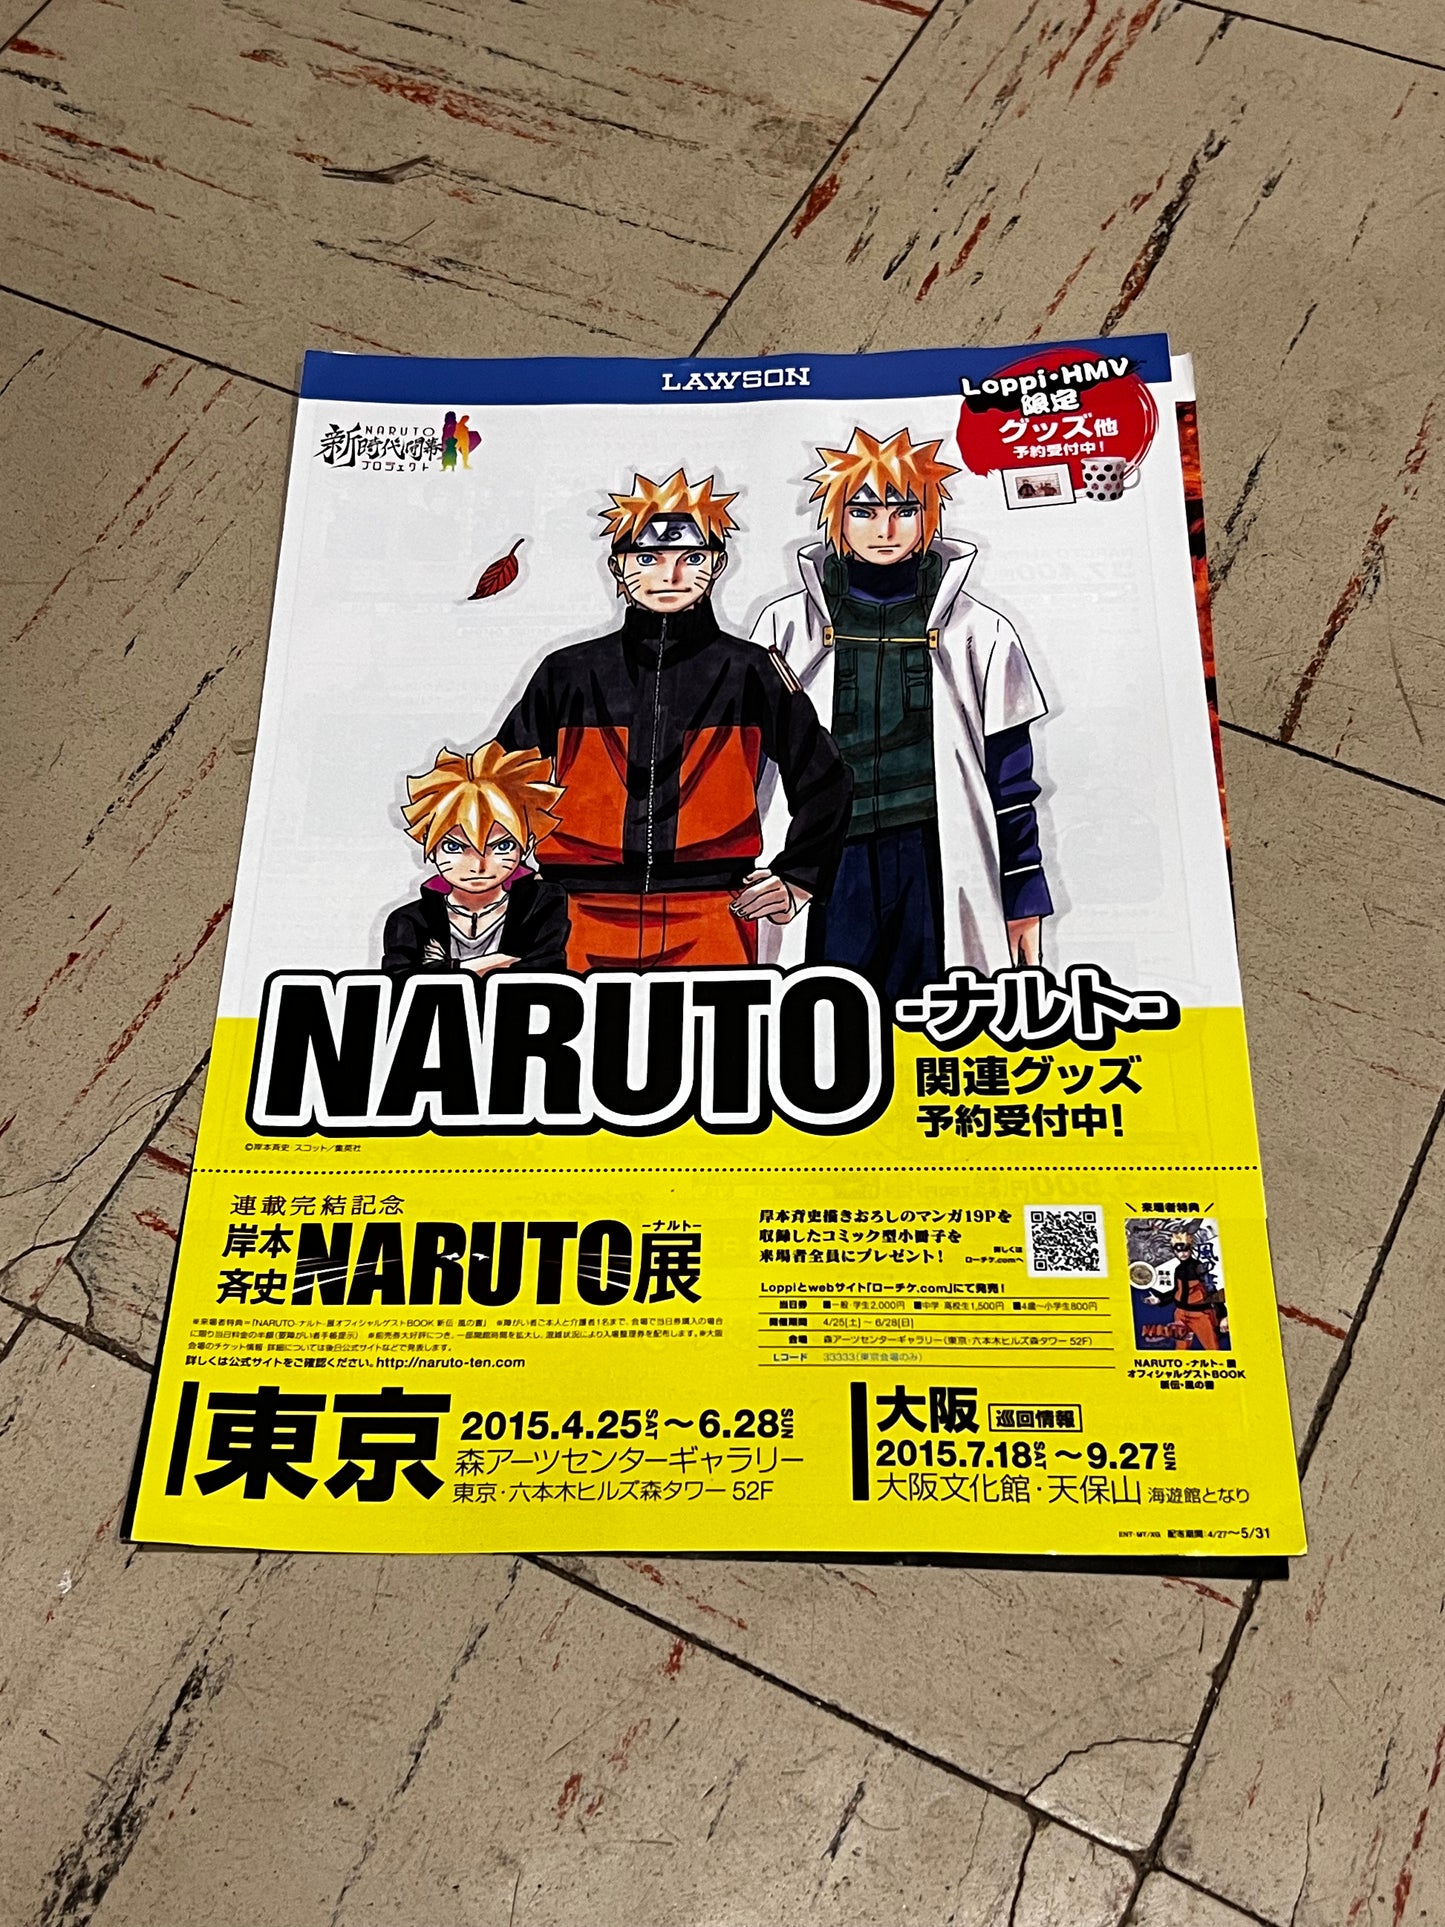 Naruto Mini Posters Serie de 2